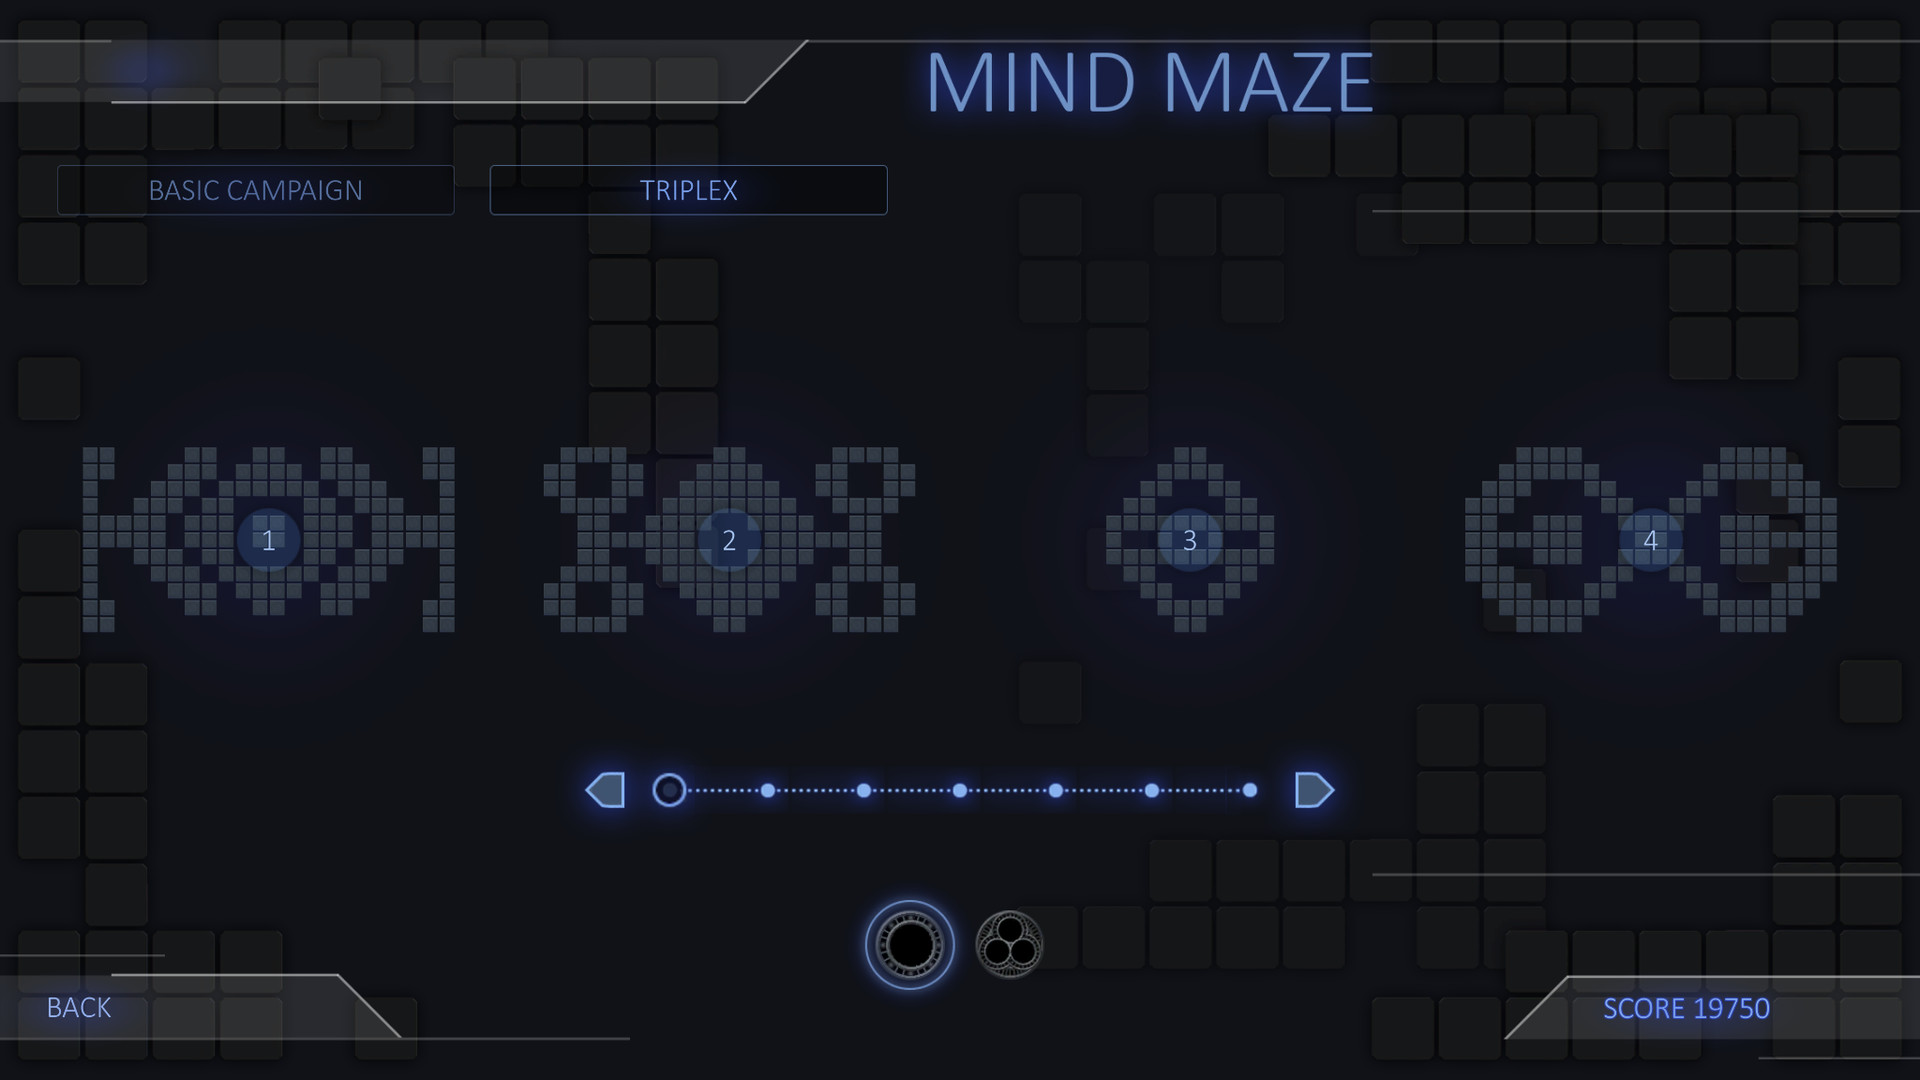 Mind Maze - Campaign "Triplex" Featured Screenshot #1